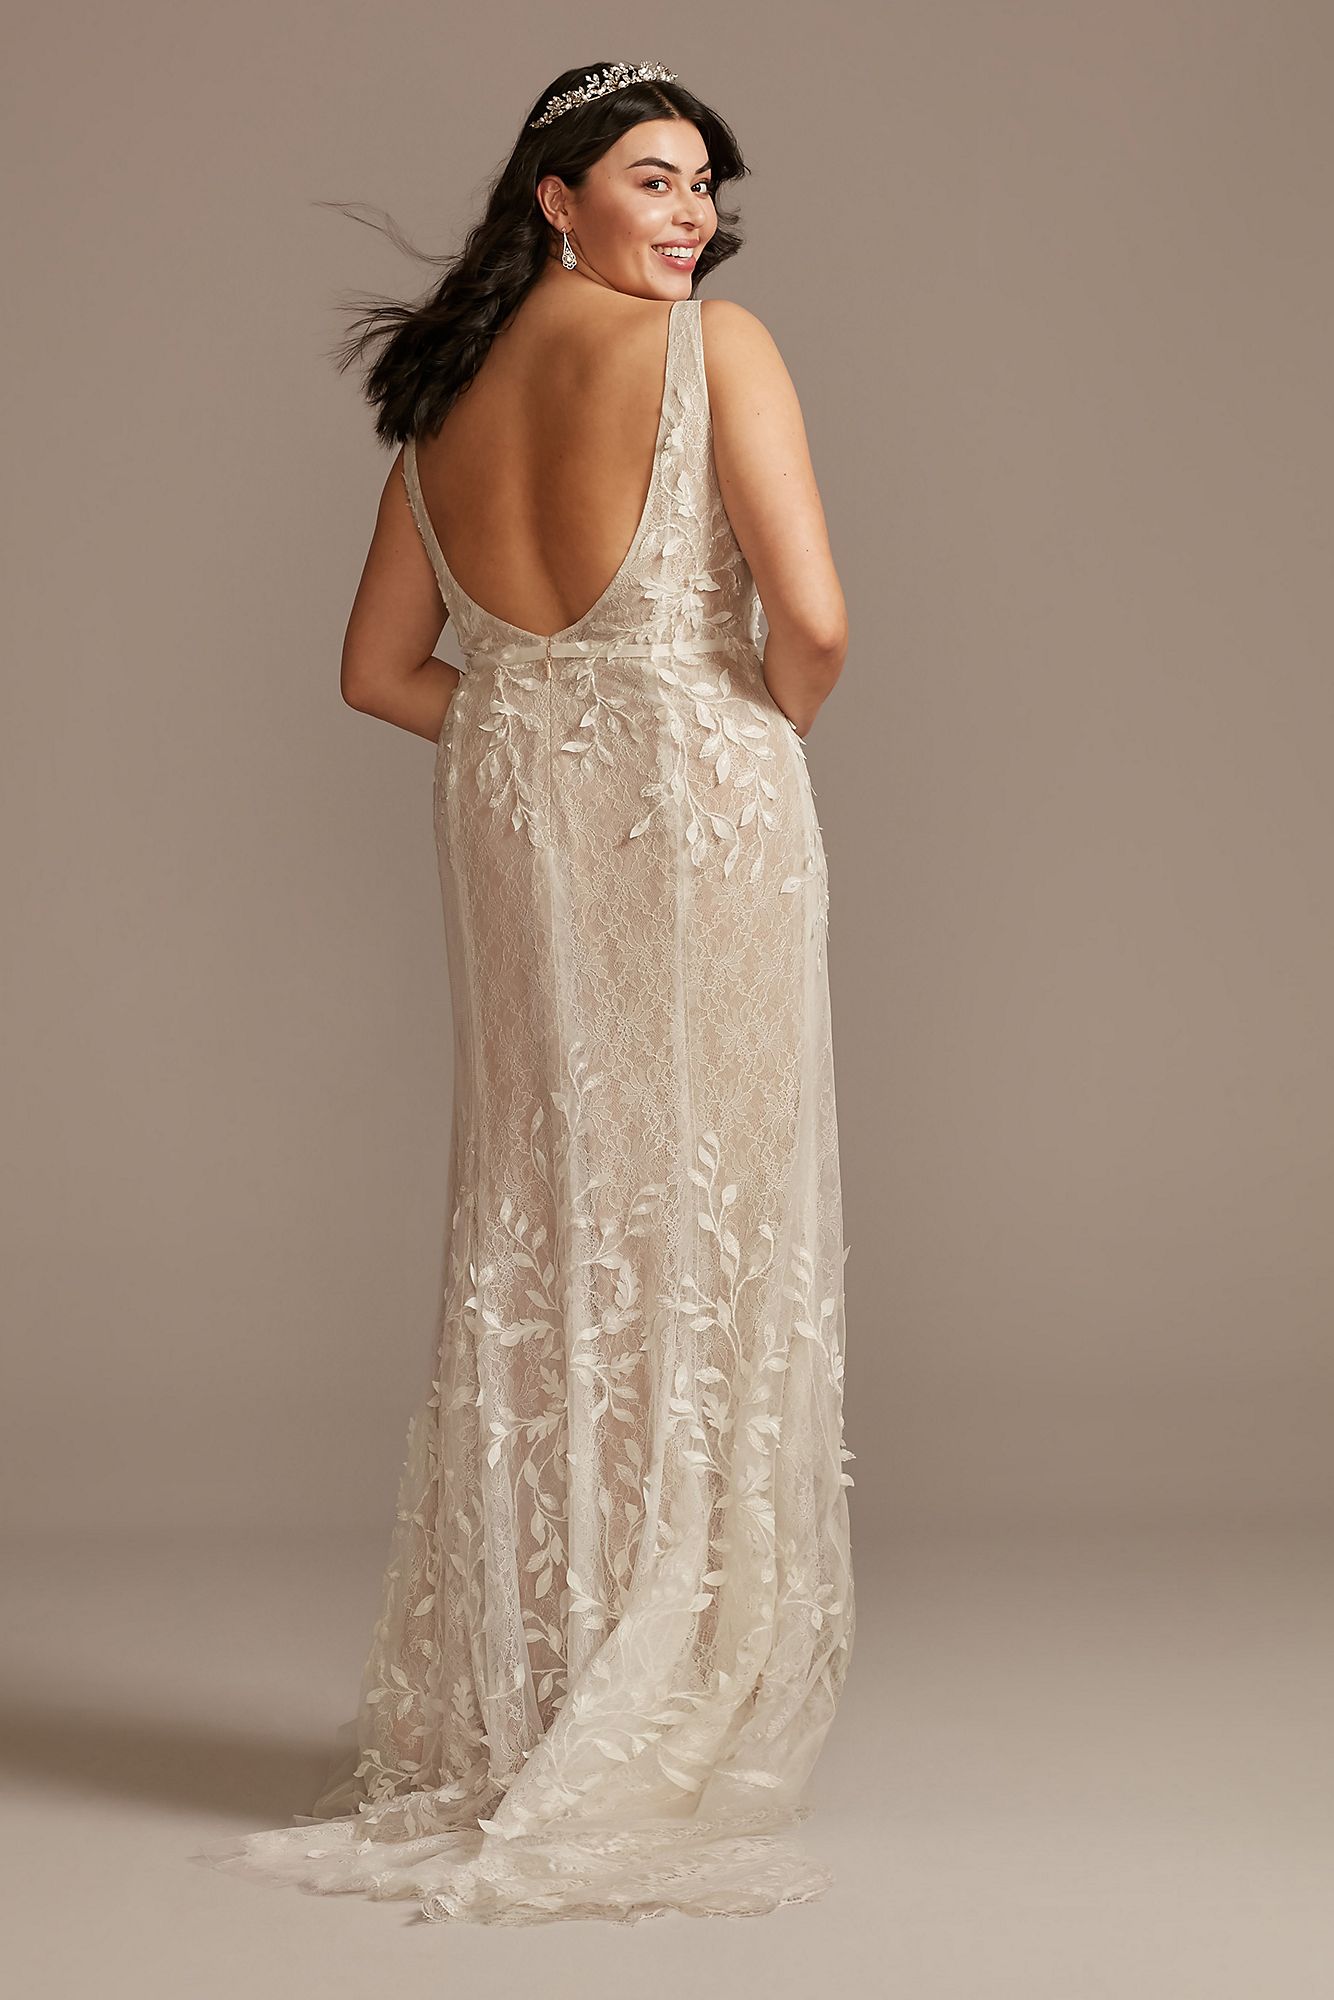 3D Leaves Applique Lace Plus Size Wedding Dress 8MS251223